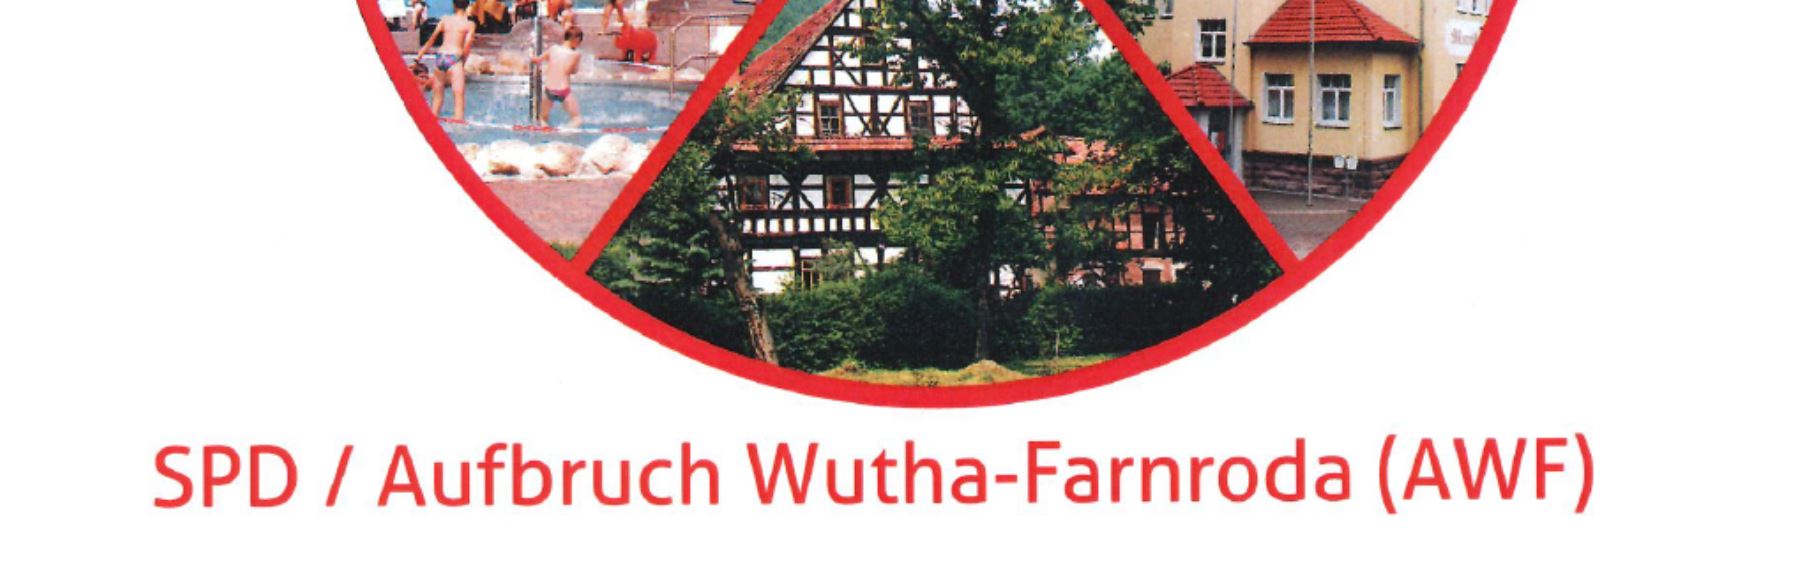 Wir in Wutha-Farnroda … SPD / Aufbruch Wutha-Farnroda stellt Kandidaten und Programm vor